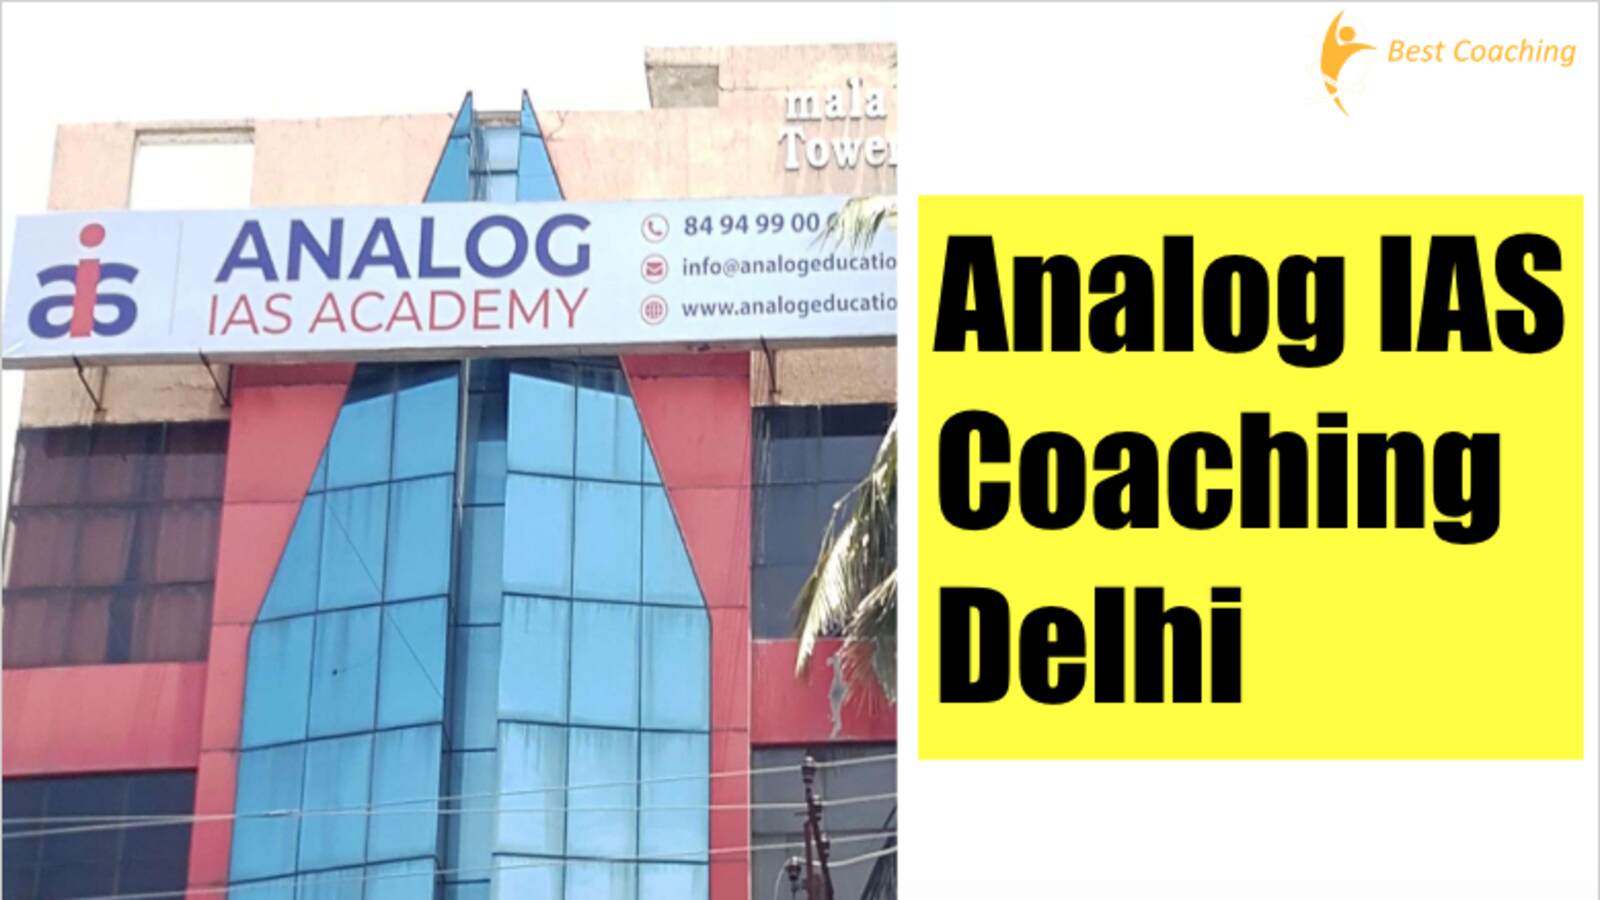 Analog IAS Coaching Delhi